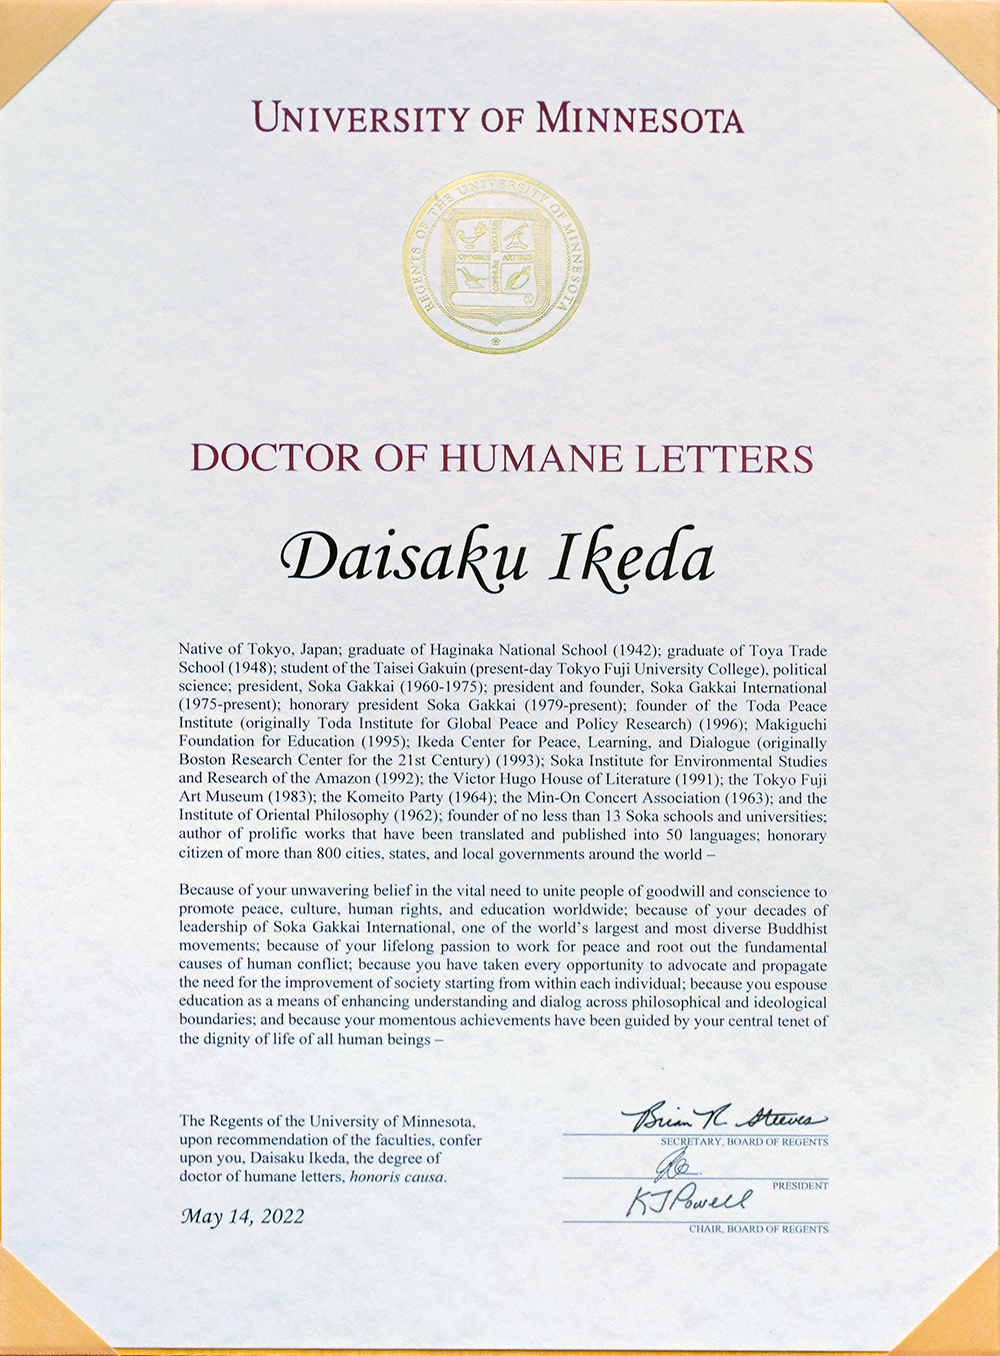 授予池田大作会长“名誉人文学博士”学位。